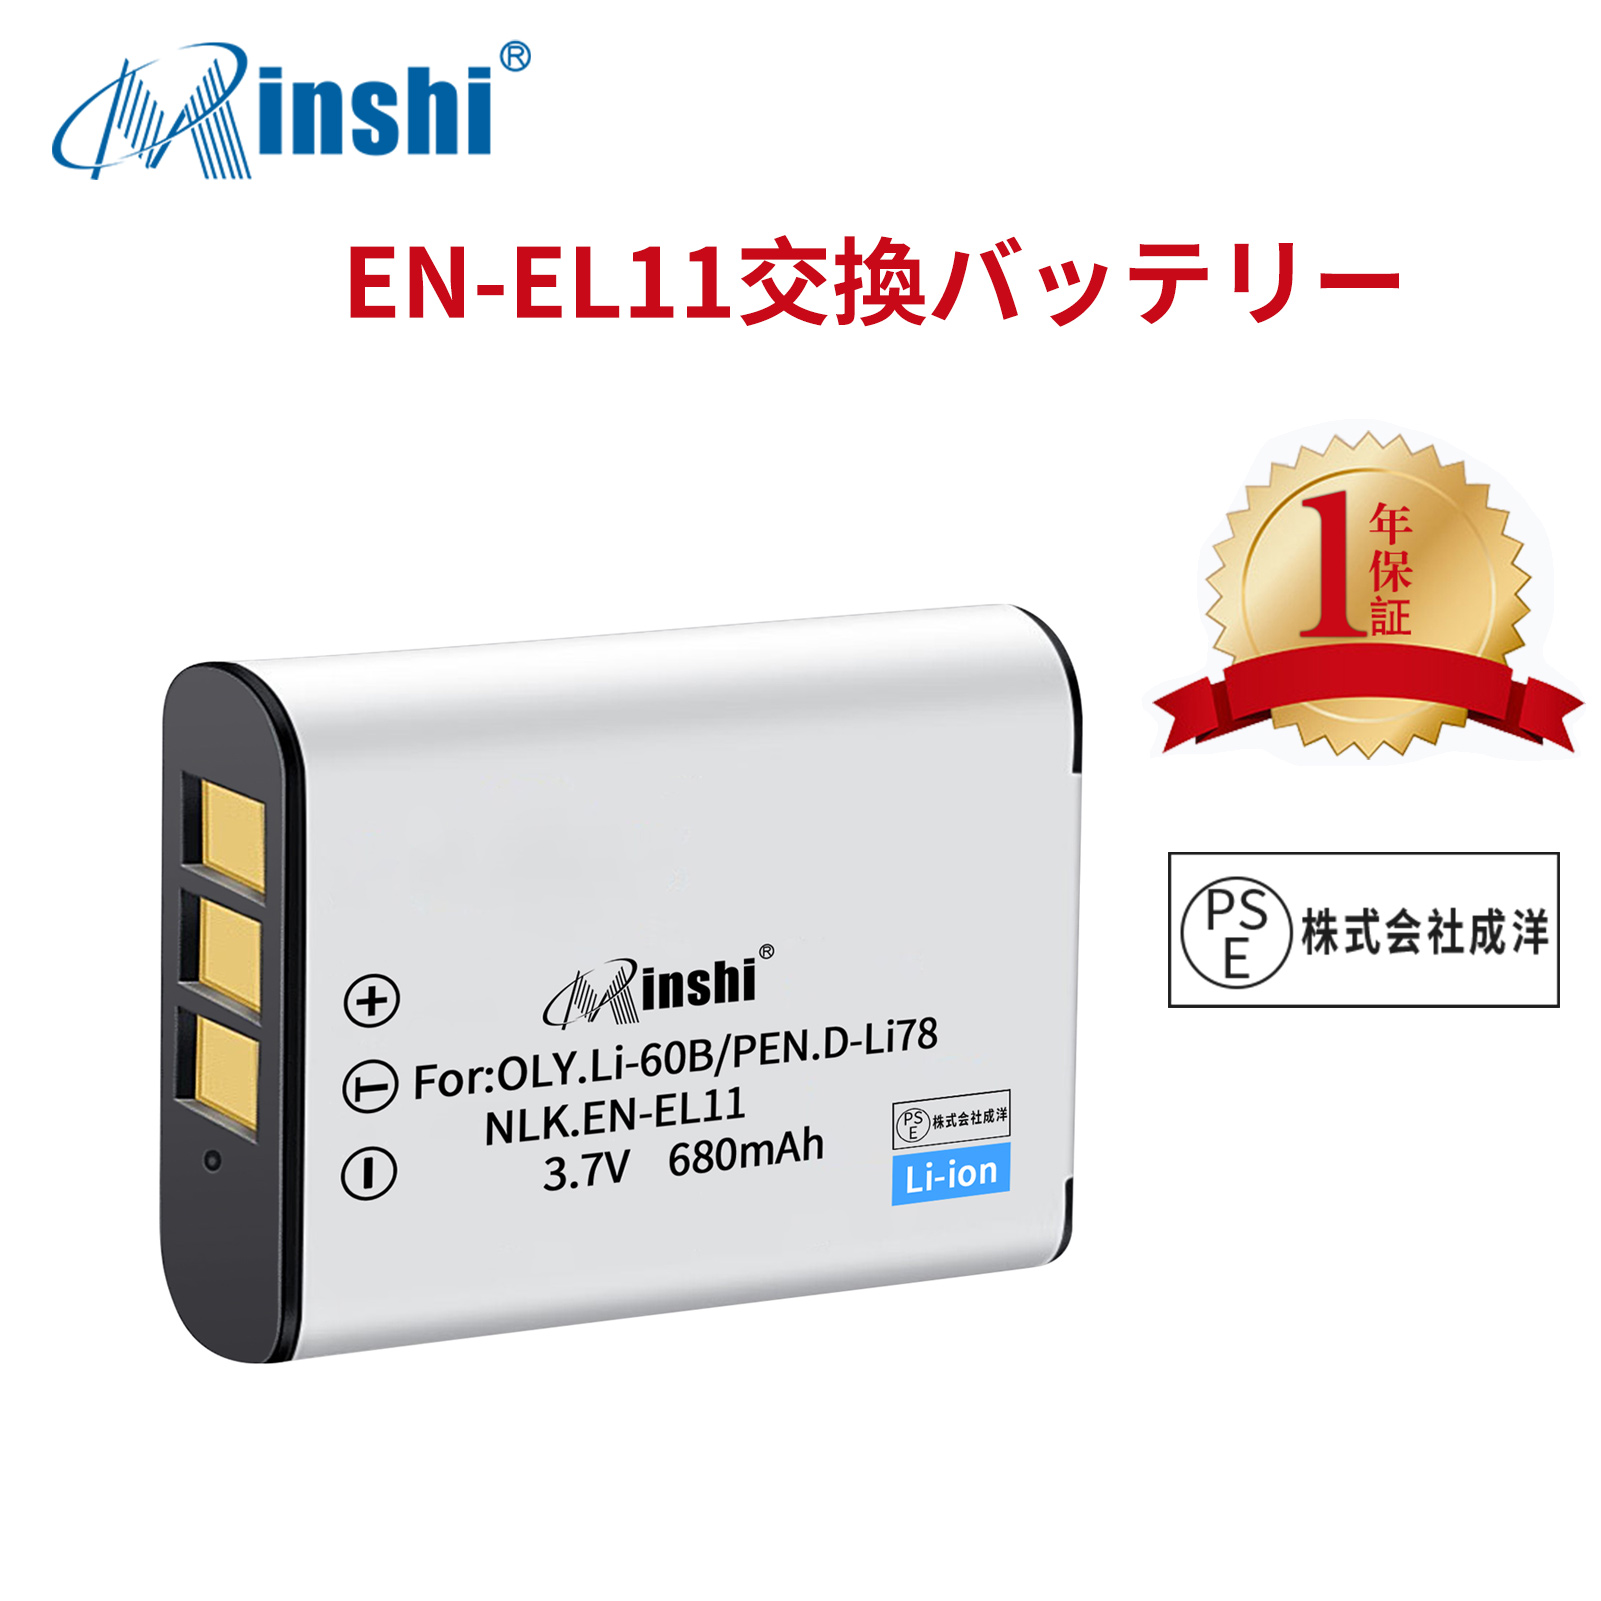 【1年保証】minshi NIKON COOLPIX S560 EN-EL11 【680mAh 3.7V】PSE認定済 高品質交換用バッテリー オリジナル充電器との互換性がない